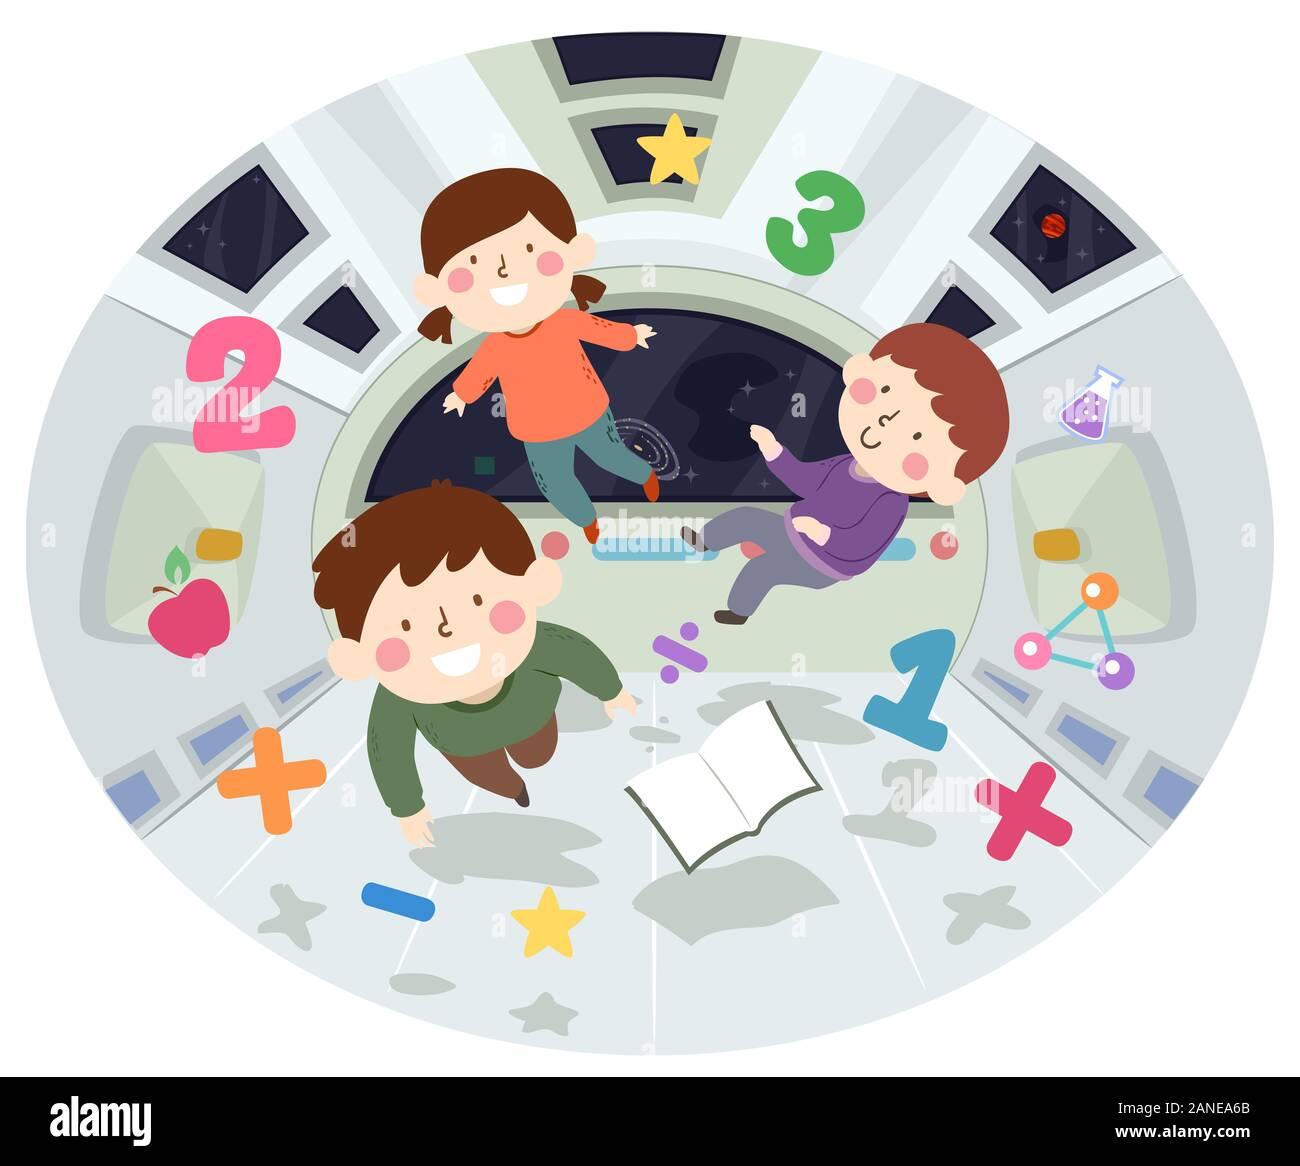 Abbildung: Kinder schweben in einem Raumschiff mit Zahlen und Bildung Elemente Stockfoto